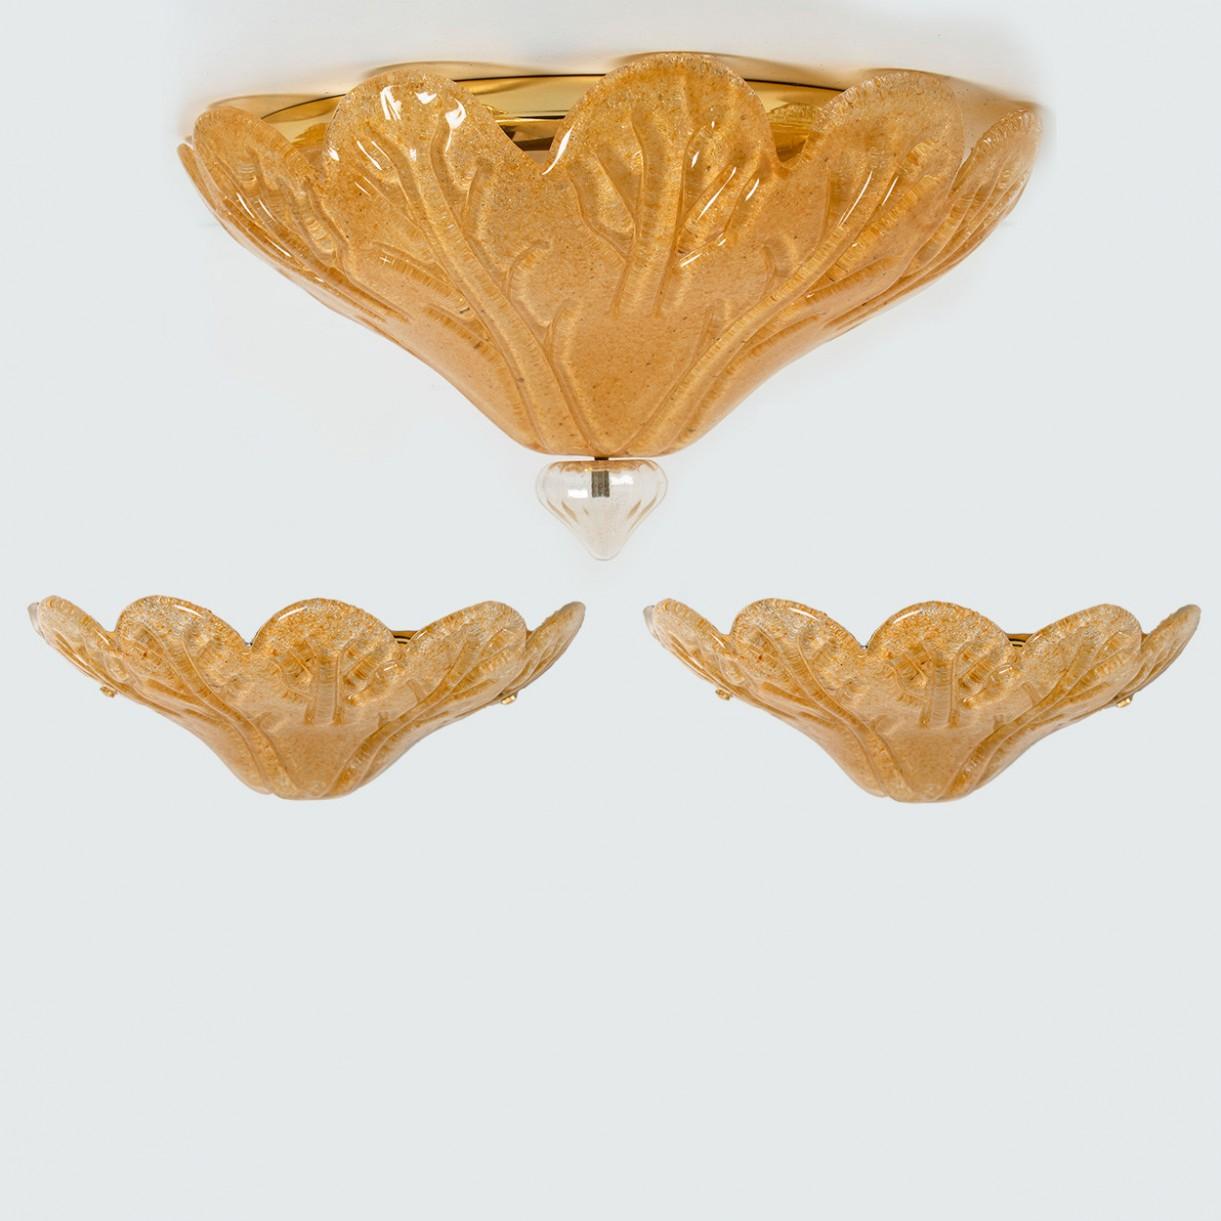 Ensemble de trois élégantes lampes en verre de Murano soufflé à la main par Vistosi, Italie, années 1970.

Montage encastré :
Le verre en forme de feuille est moucheté d'or et a un 